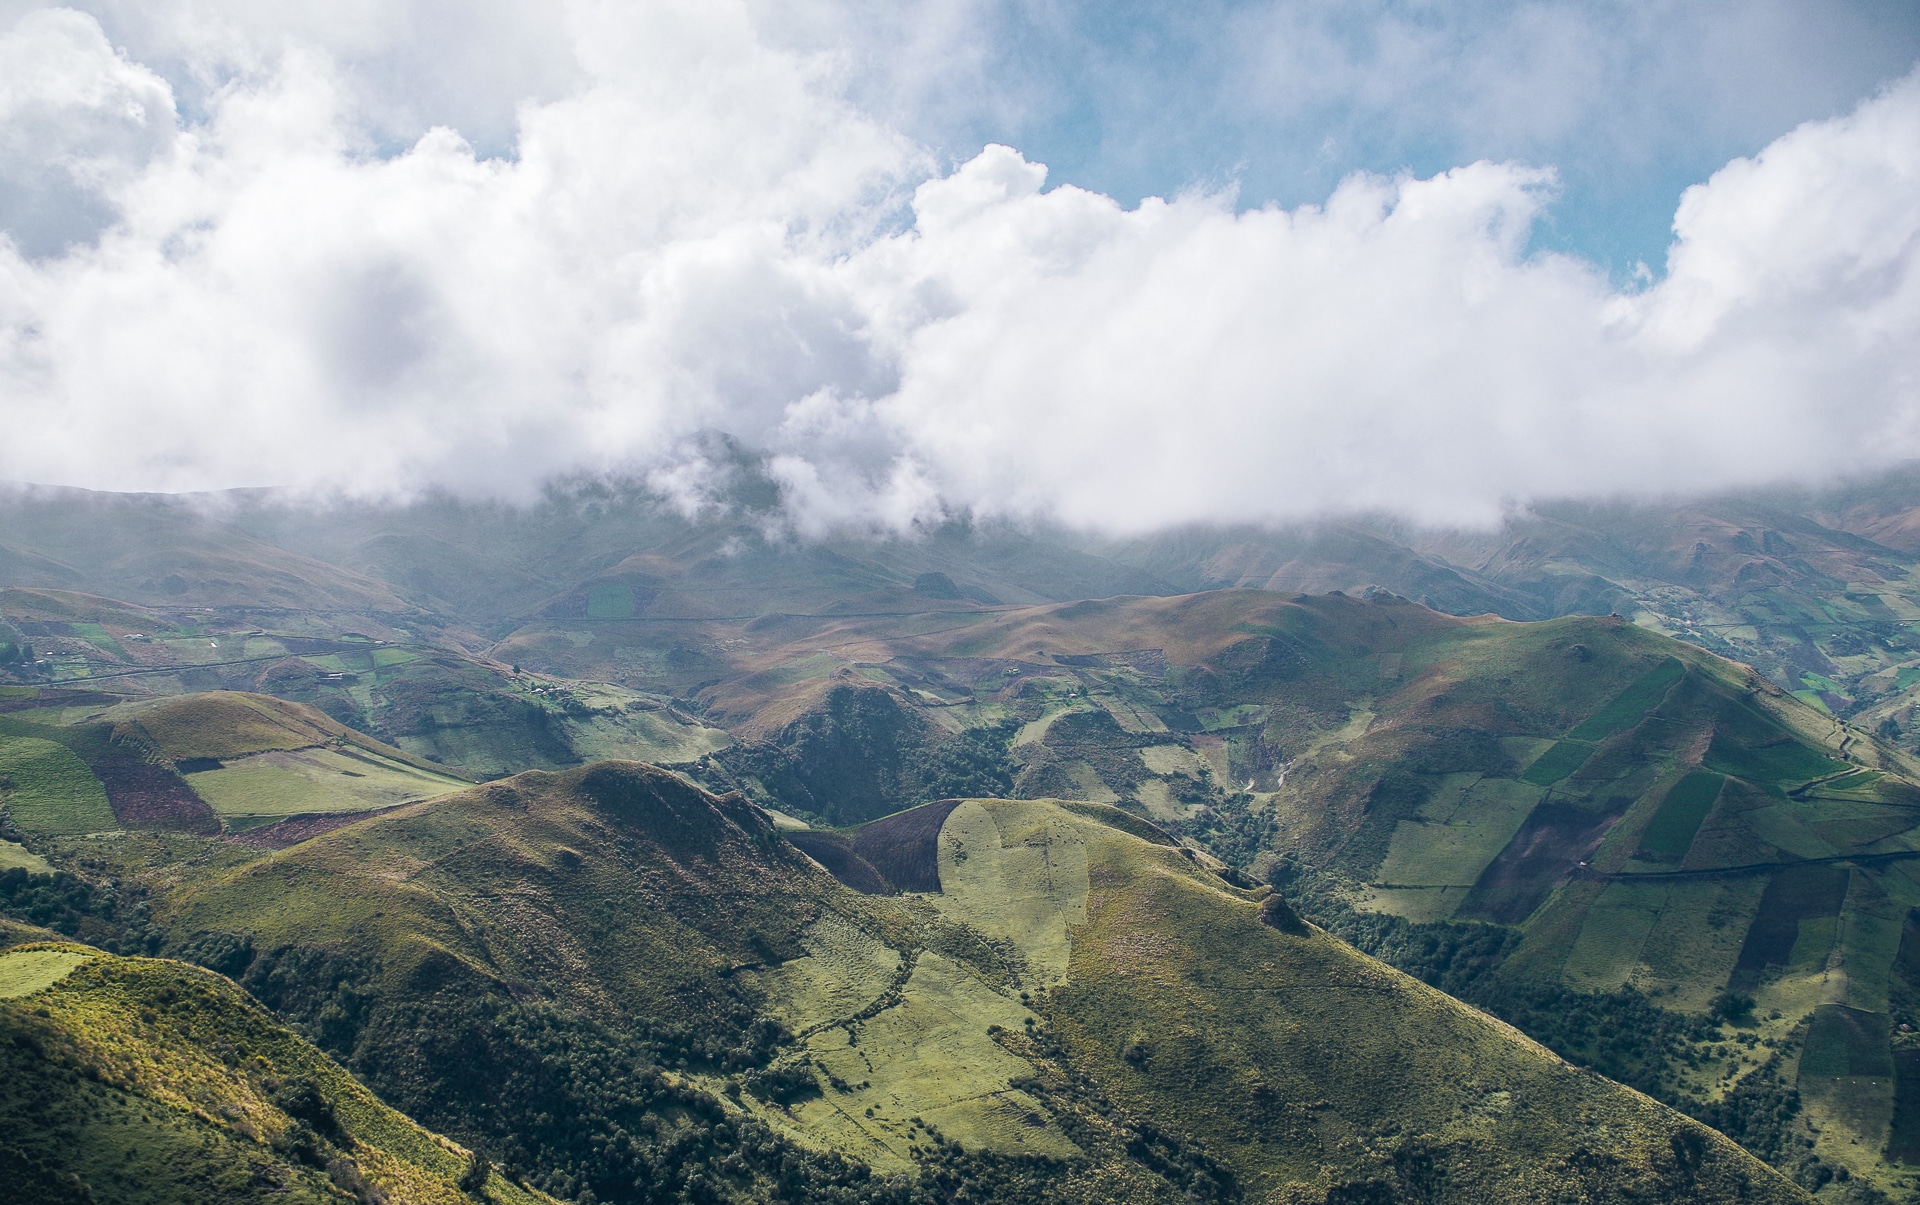 montagne recouverte de champ de culture vue lors du Trek Quilotoa Isinlivi